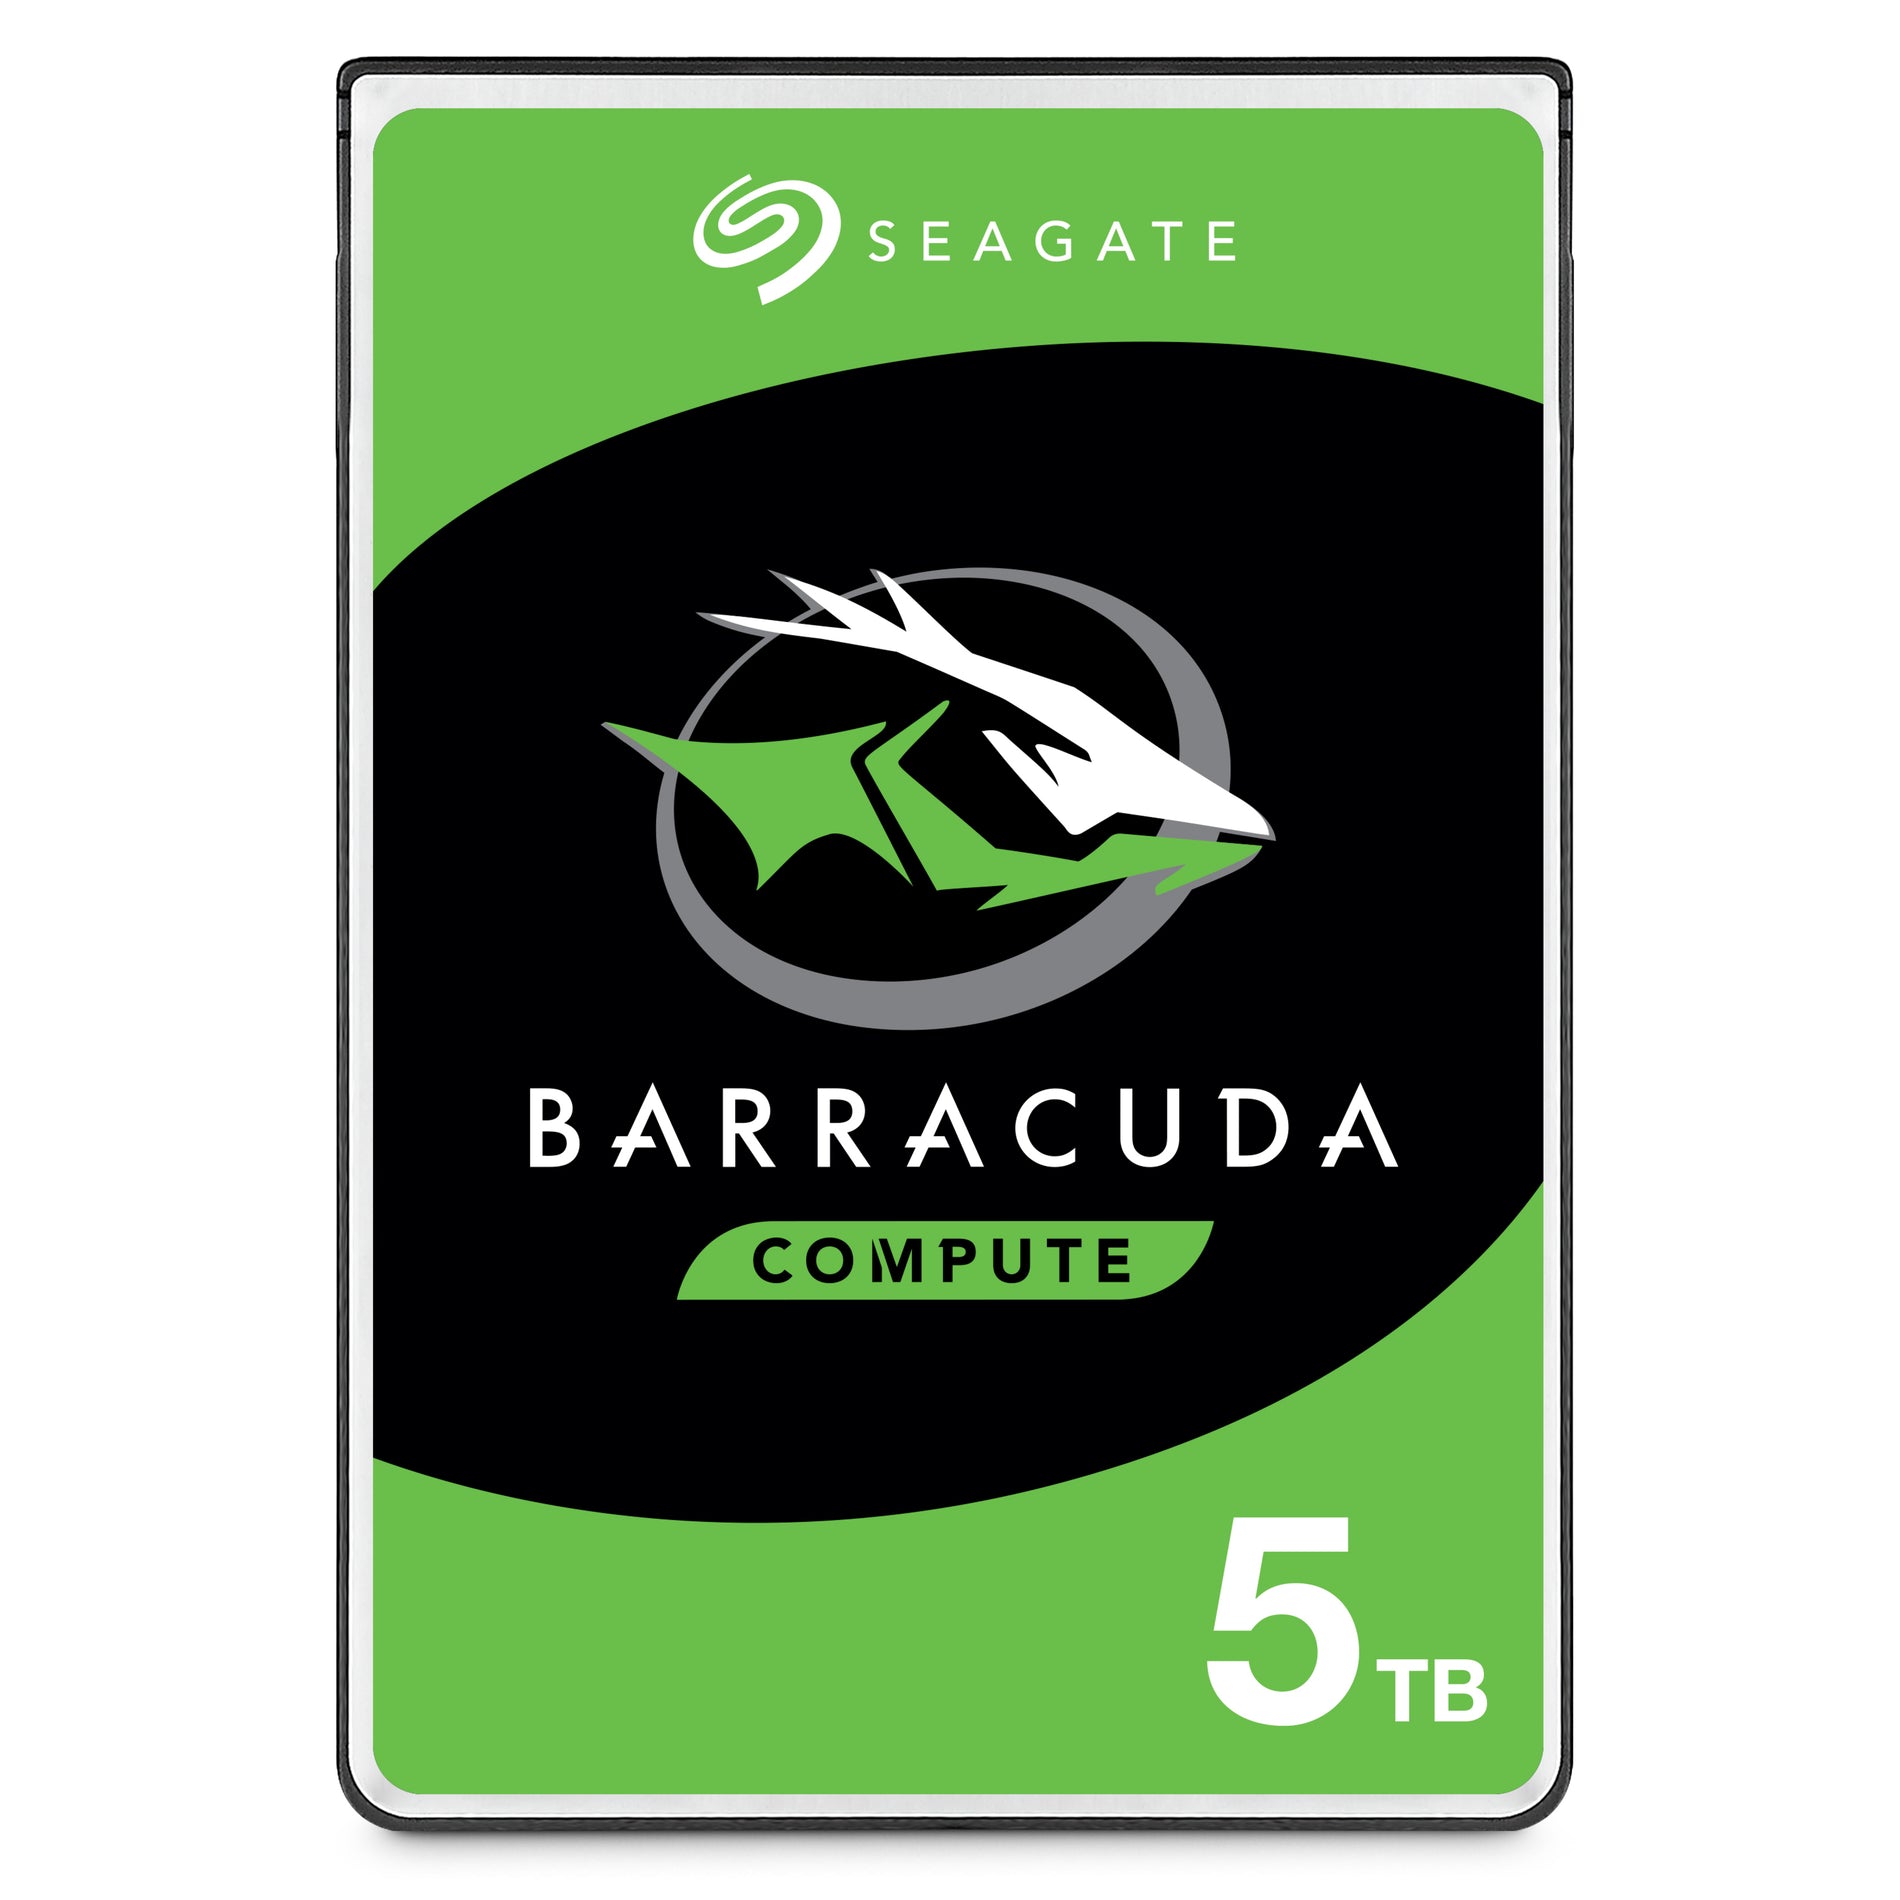 Seagate ST5000LM000 BarraCuda 5 TB Hard Drive, SATA 2.5", 5400RPM, 128MB Buffer